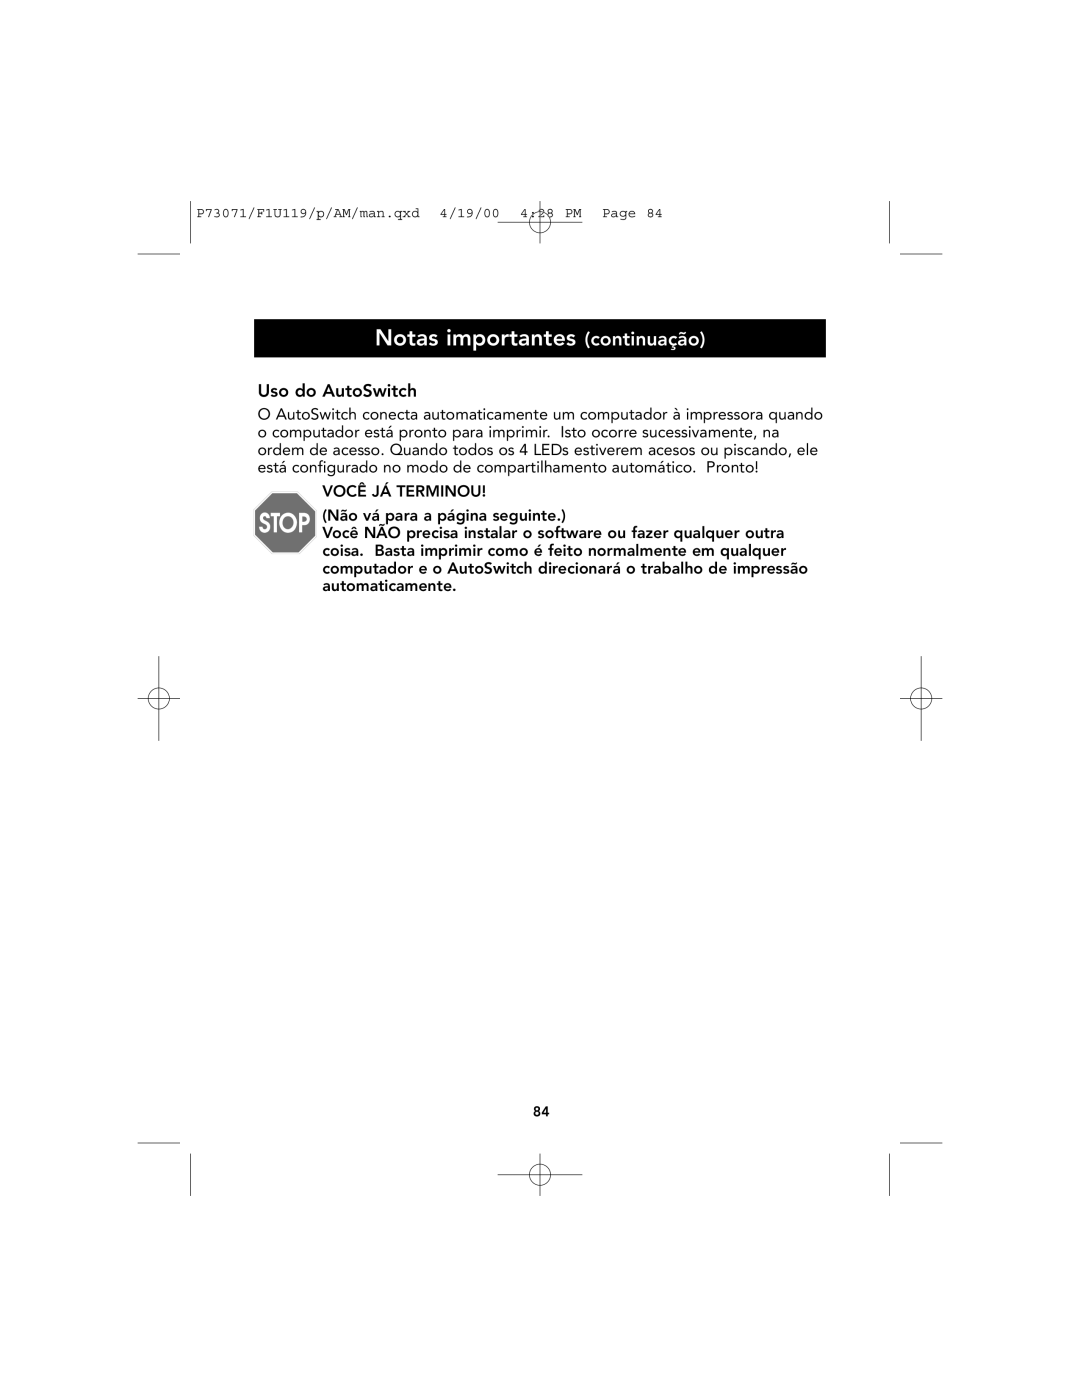 Belkin F1U119 user manual Notas importantes continuação, Uso do AutoSwitch 